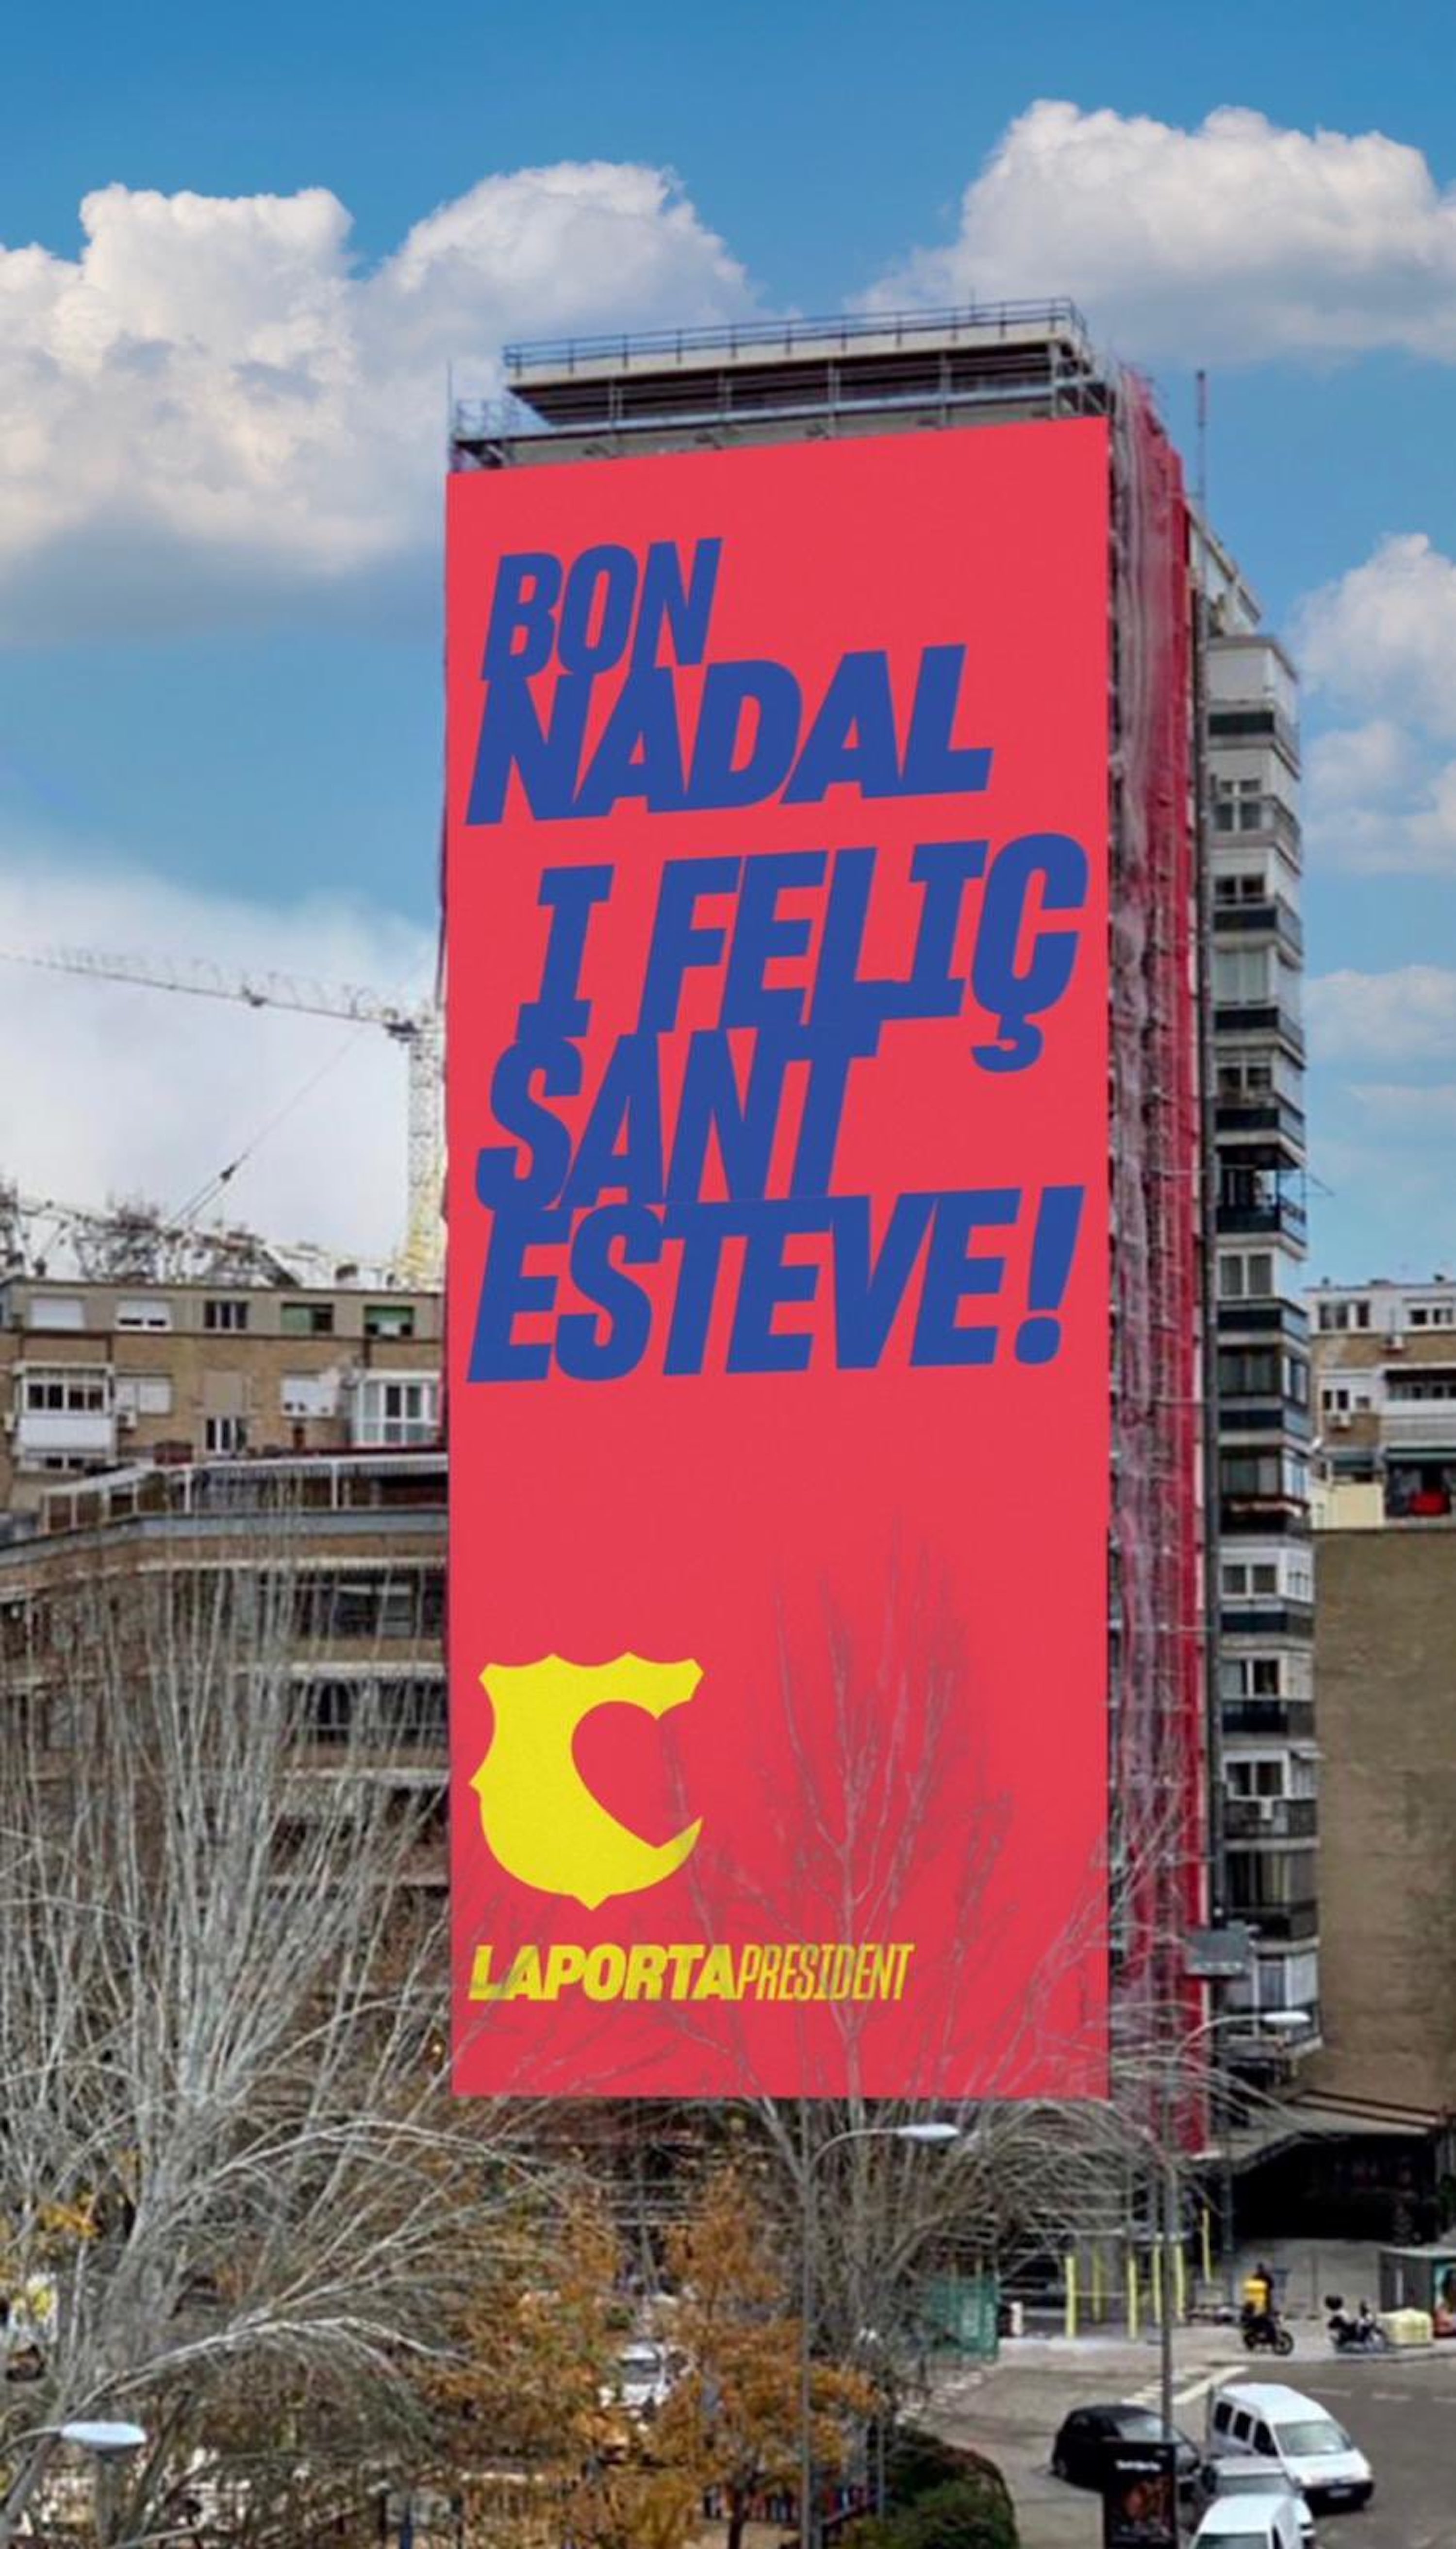 La 'nova pancarta' de Laporta per celebrar les festes de Nadal